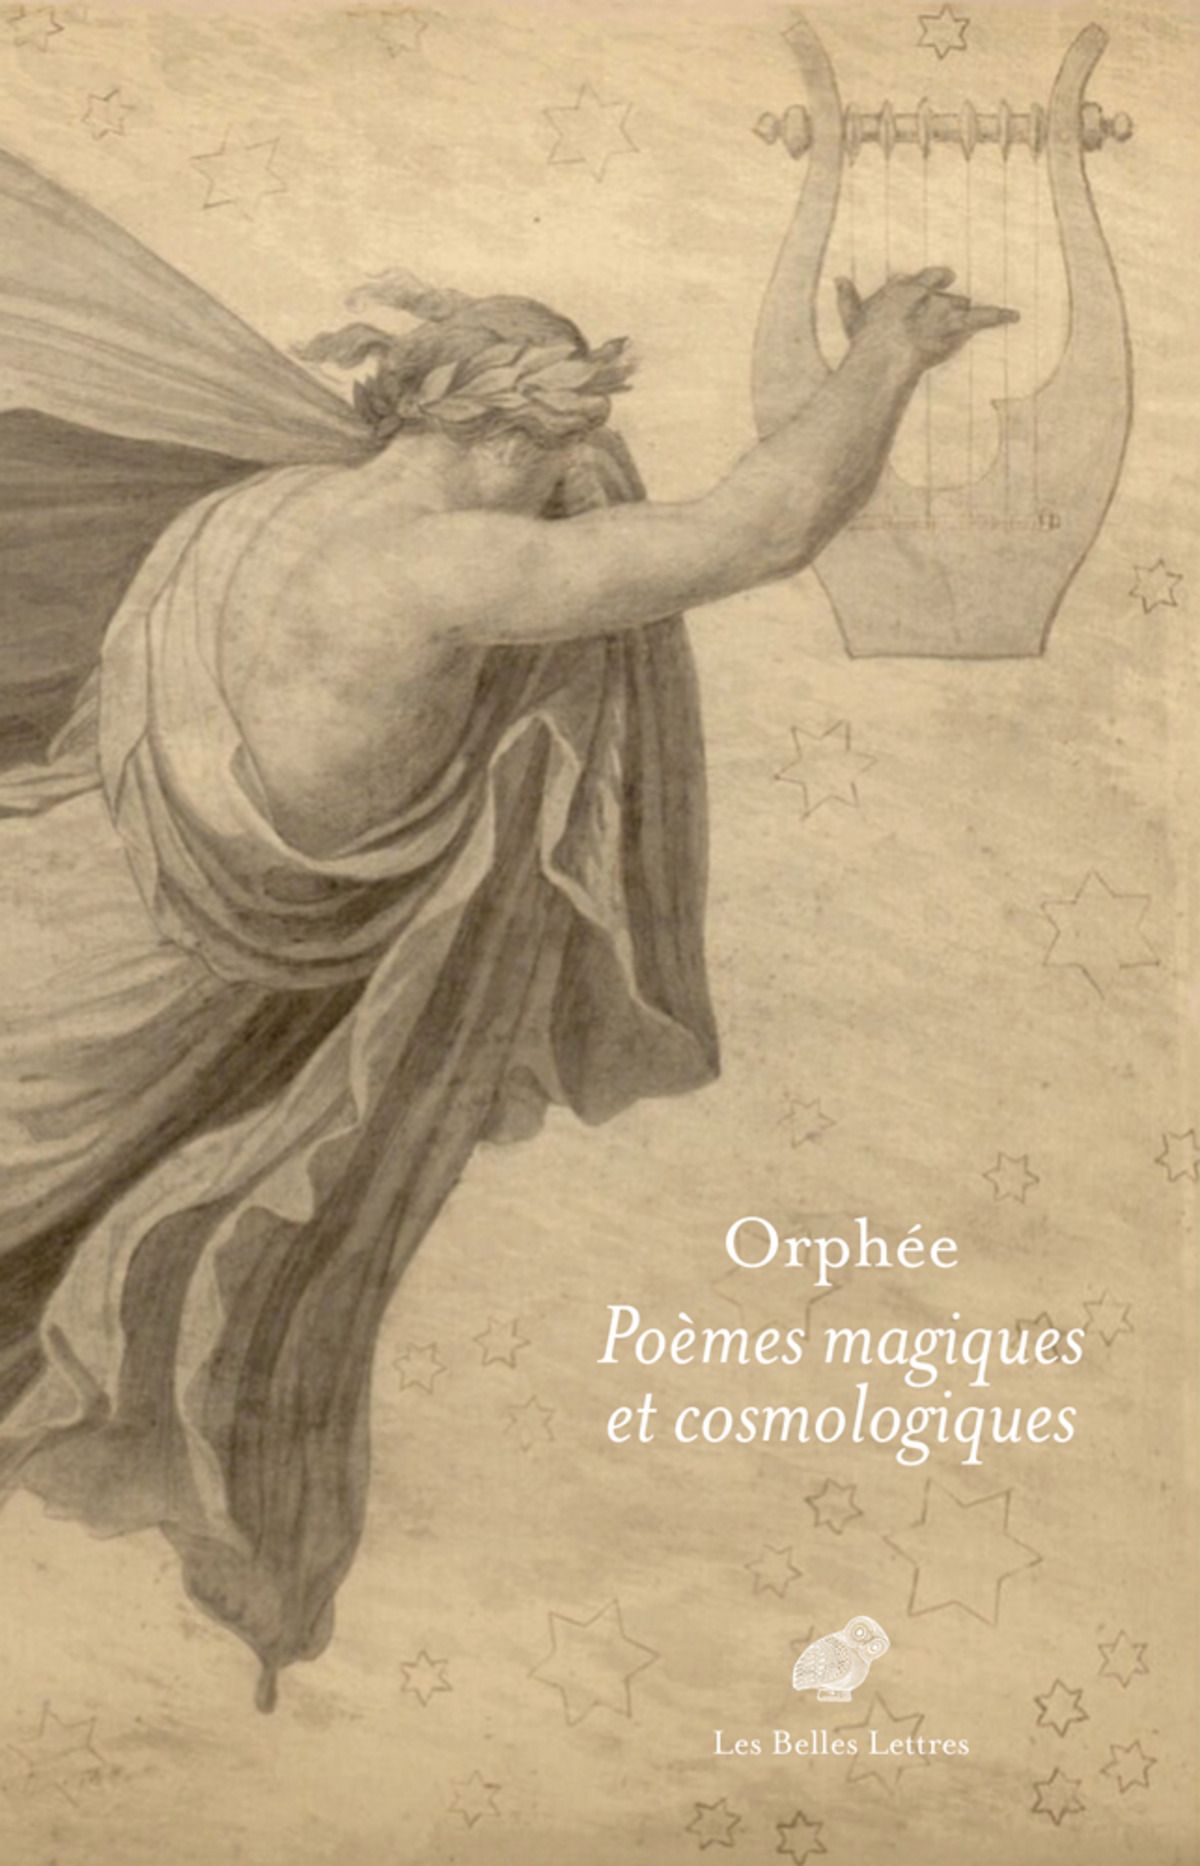 Orphée, Poèmes magiques et cosmologiques